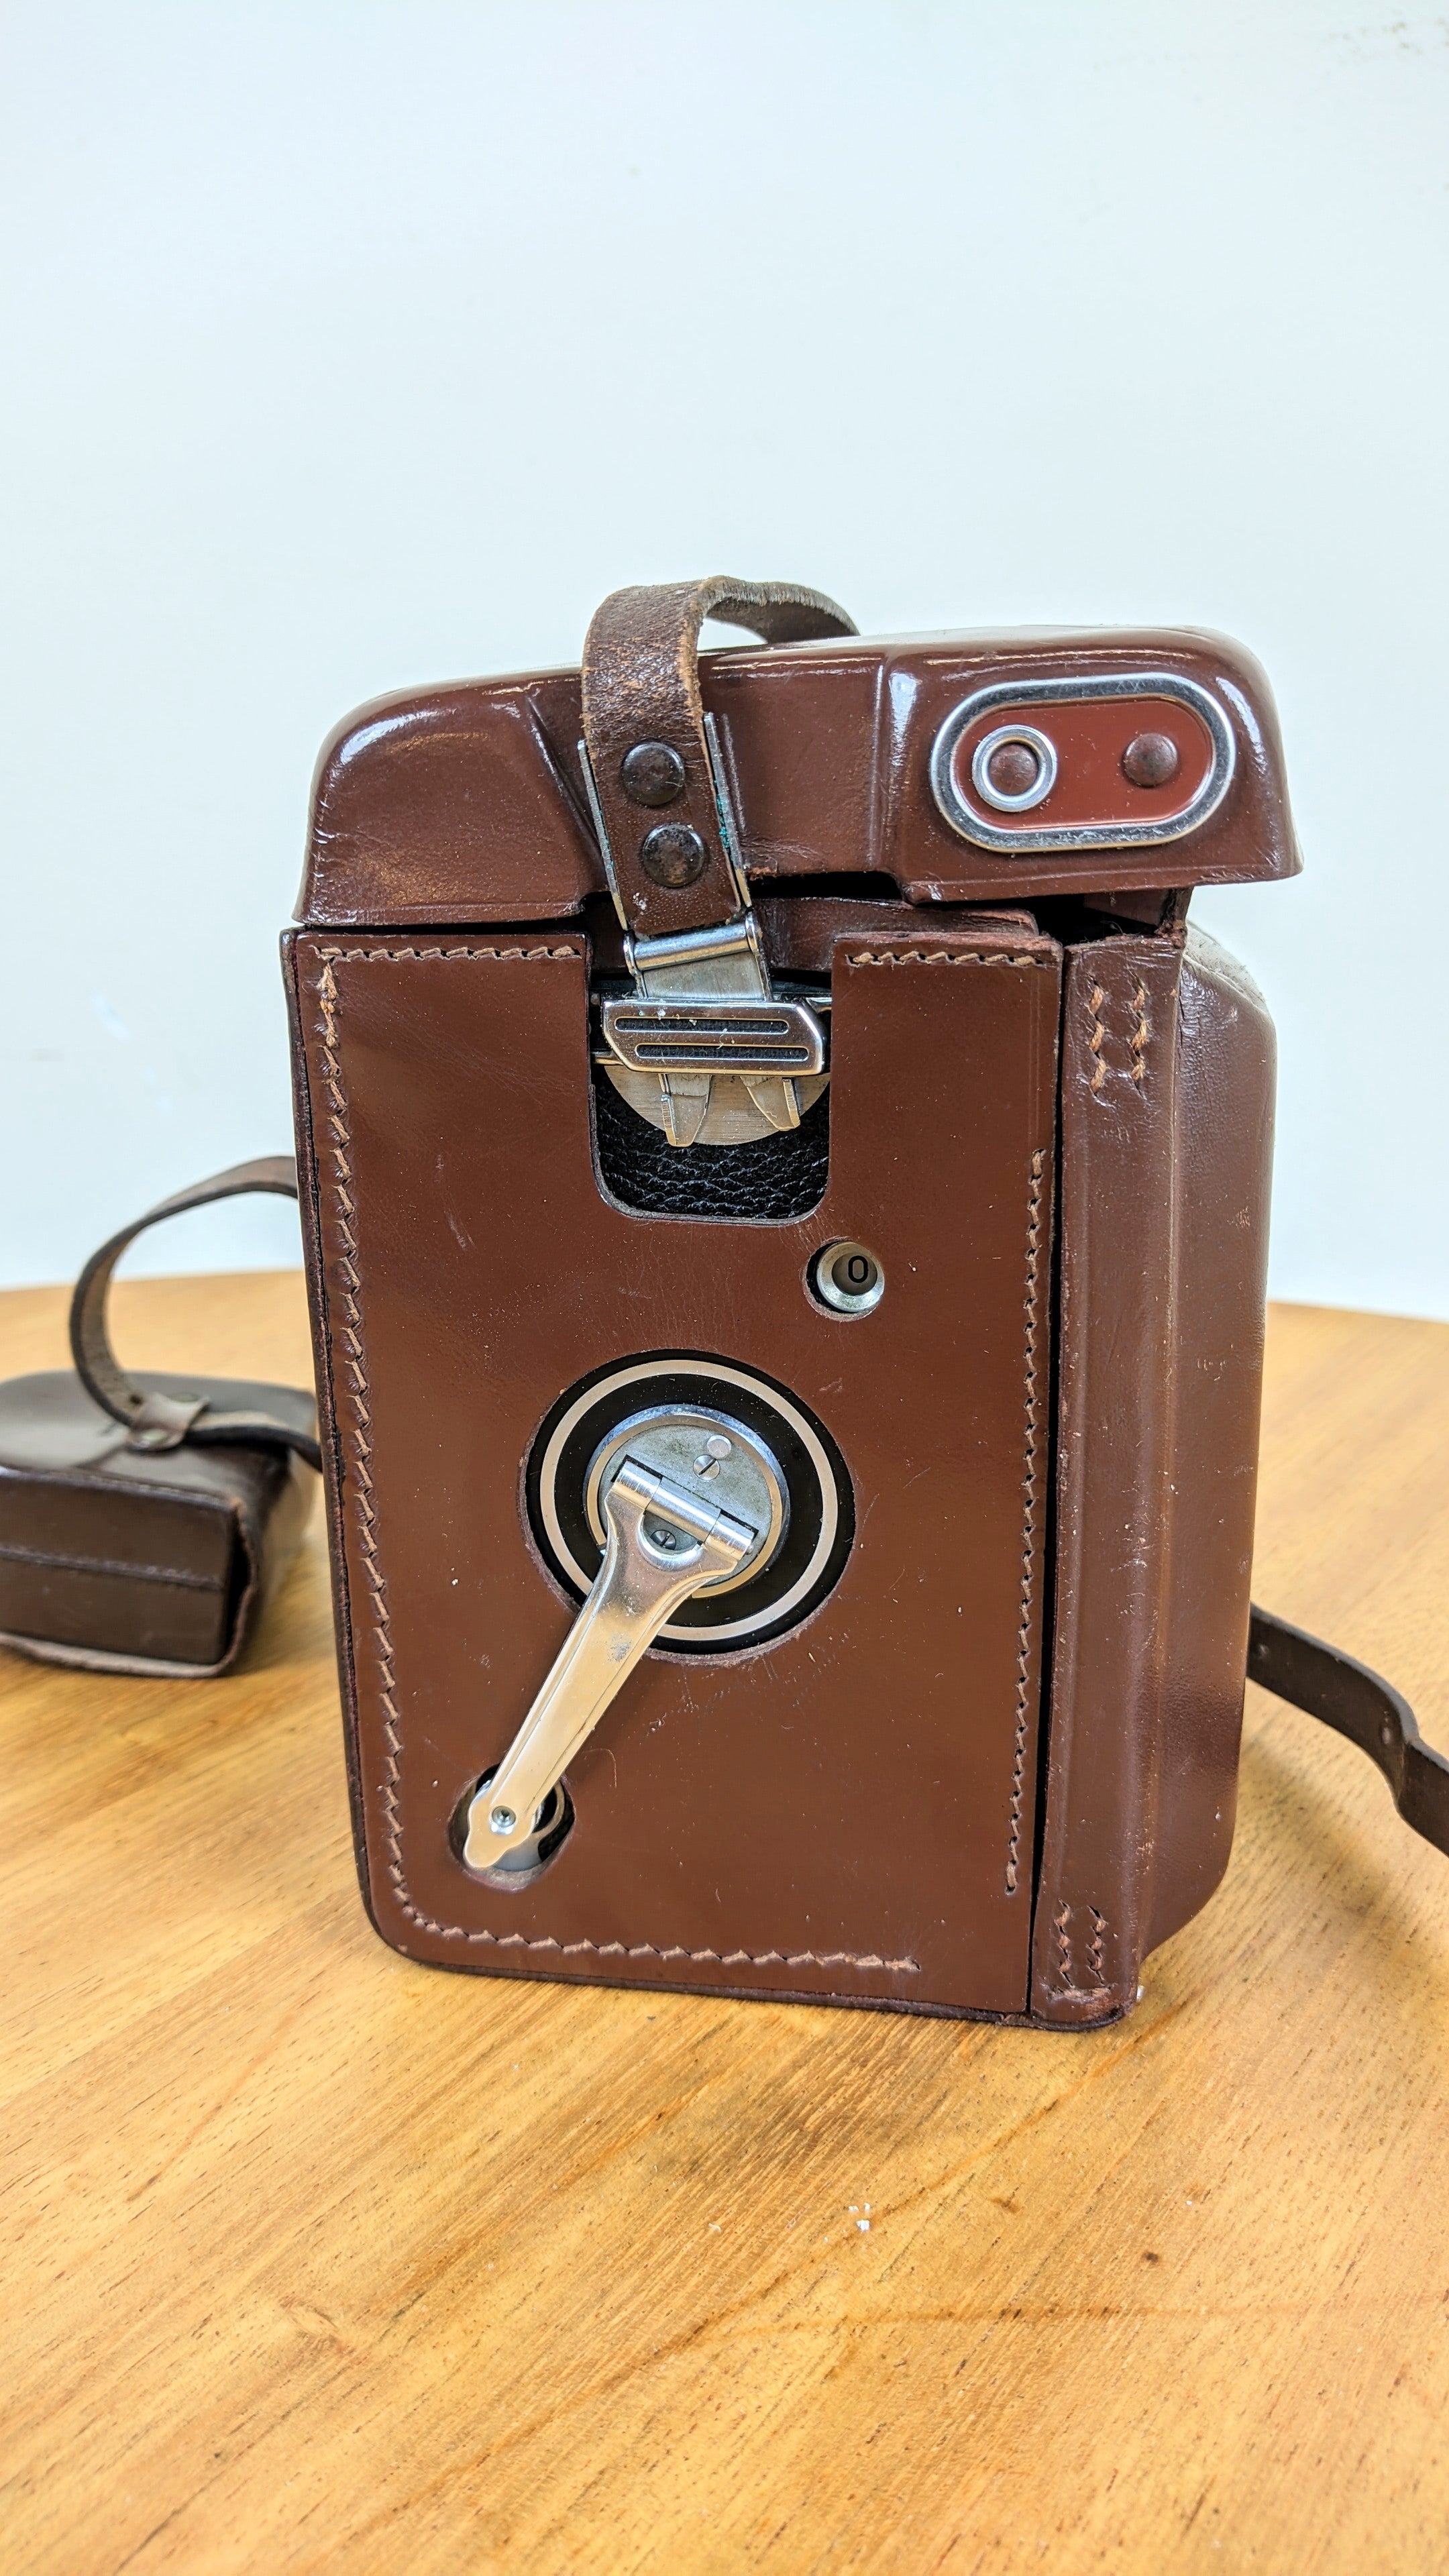 Câmera fotográfica antiga Rolleiflex 3.5 (não funciona)